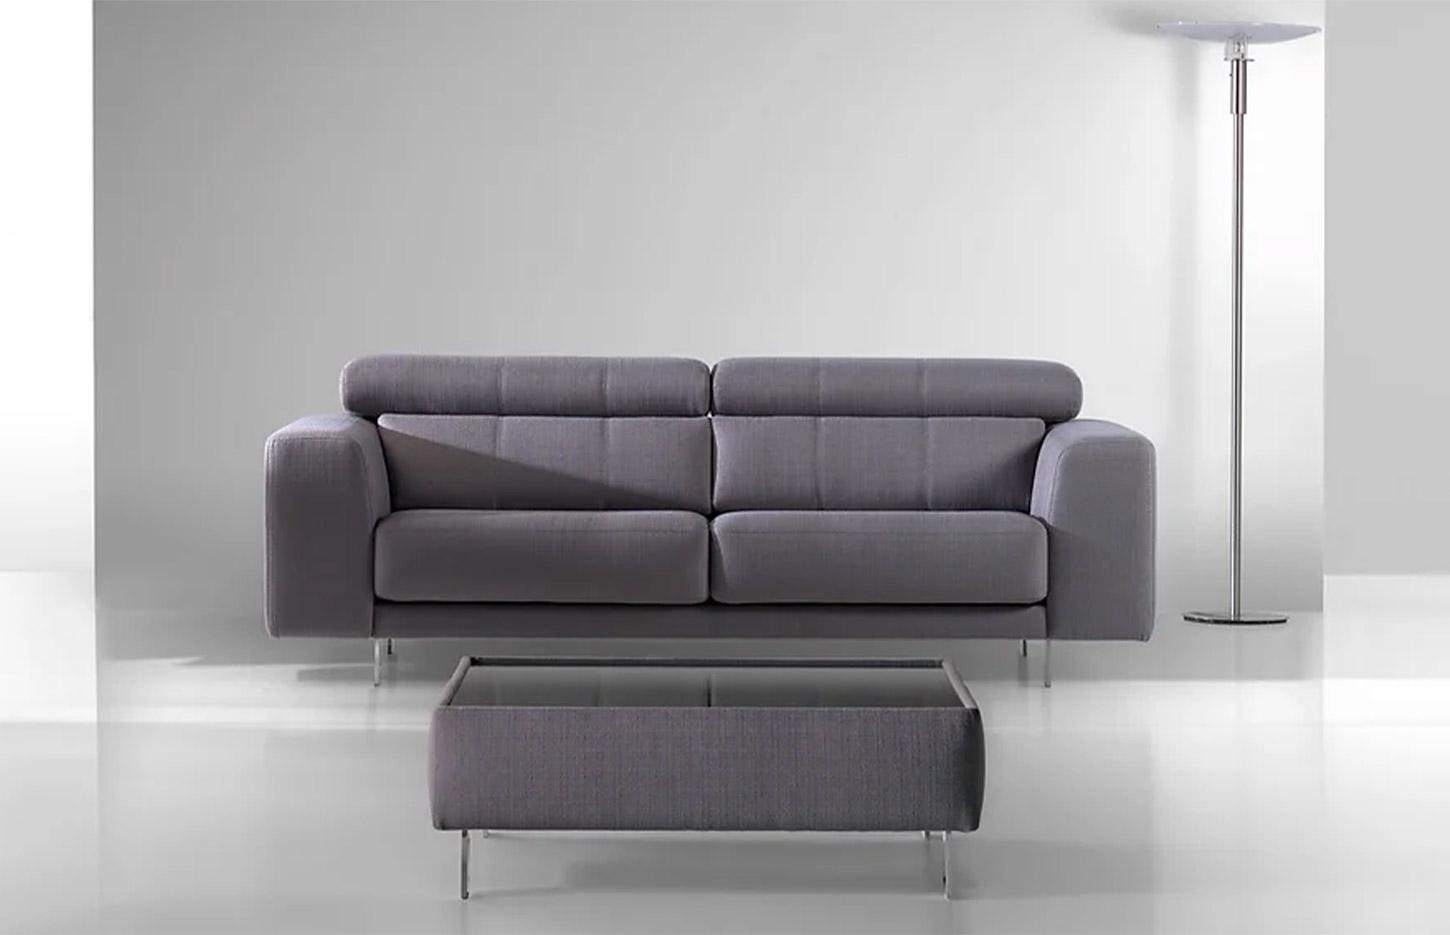 Canapé confortable en tissu avec têtière réglable et pieds métal, gamme Malte - France Bureau